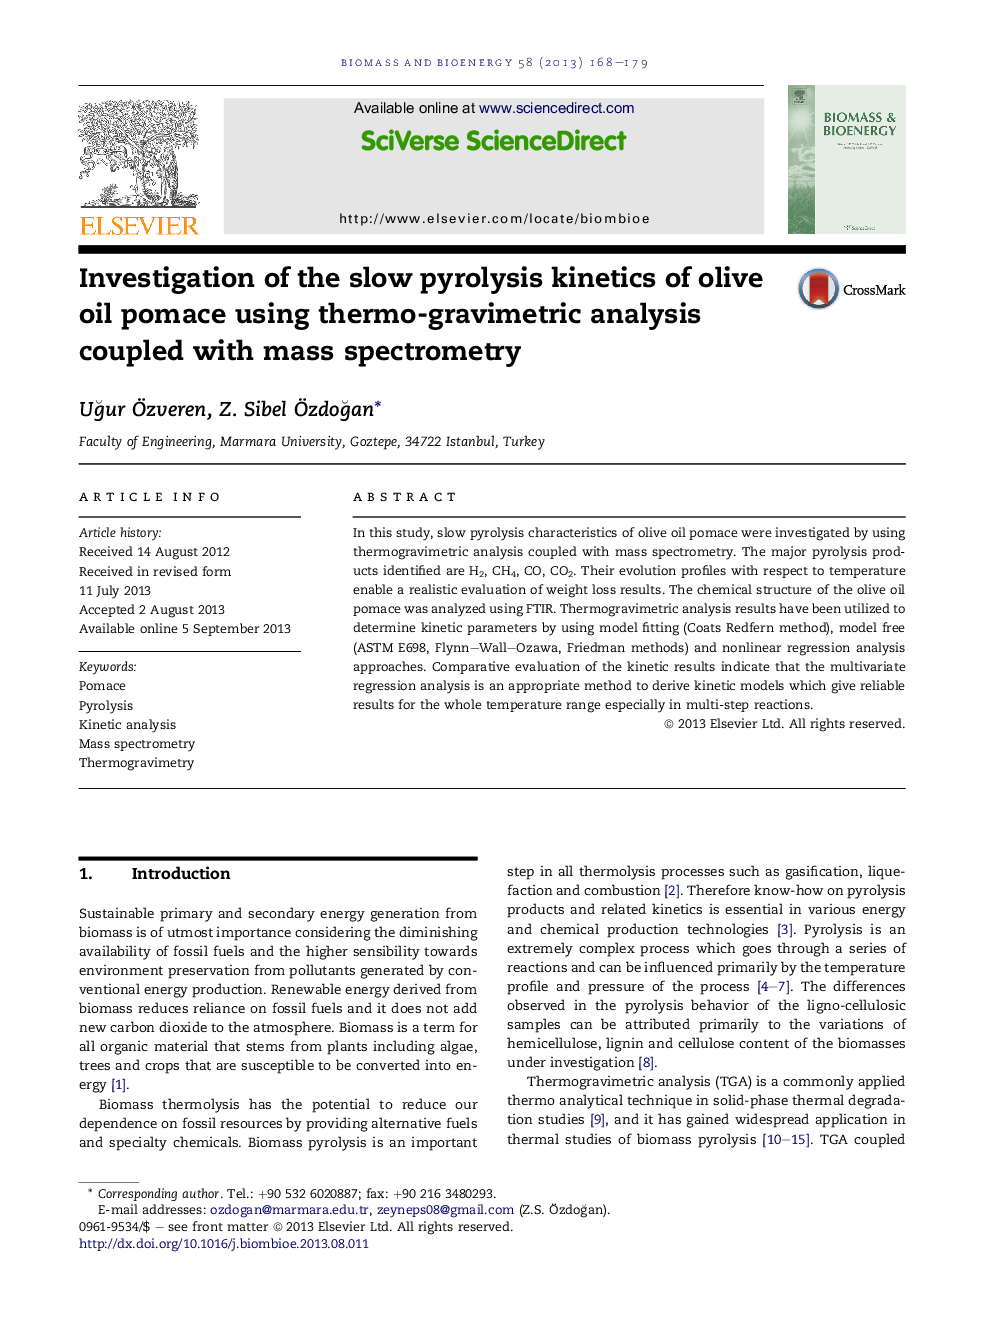 بررسی سینتیک آهسته پیرولیز زعفران روغن زیتون با استفاده از آنالیز گرماسنجی همراه با طیف سنجی جرمی 